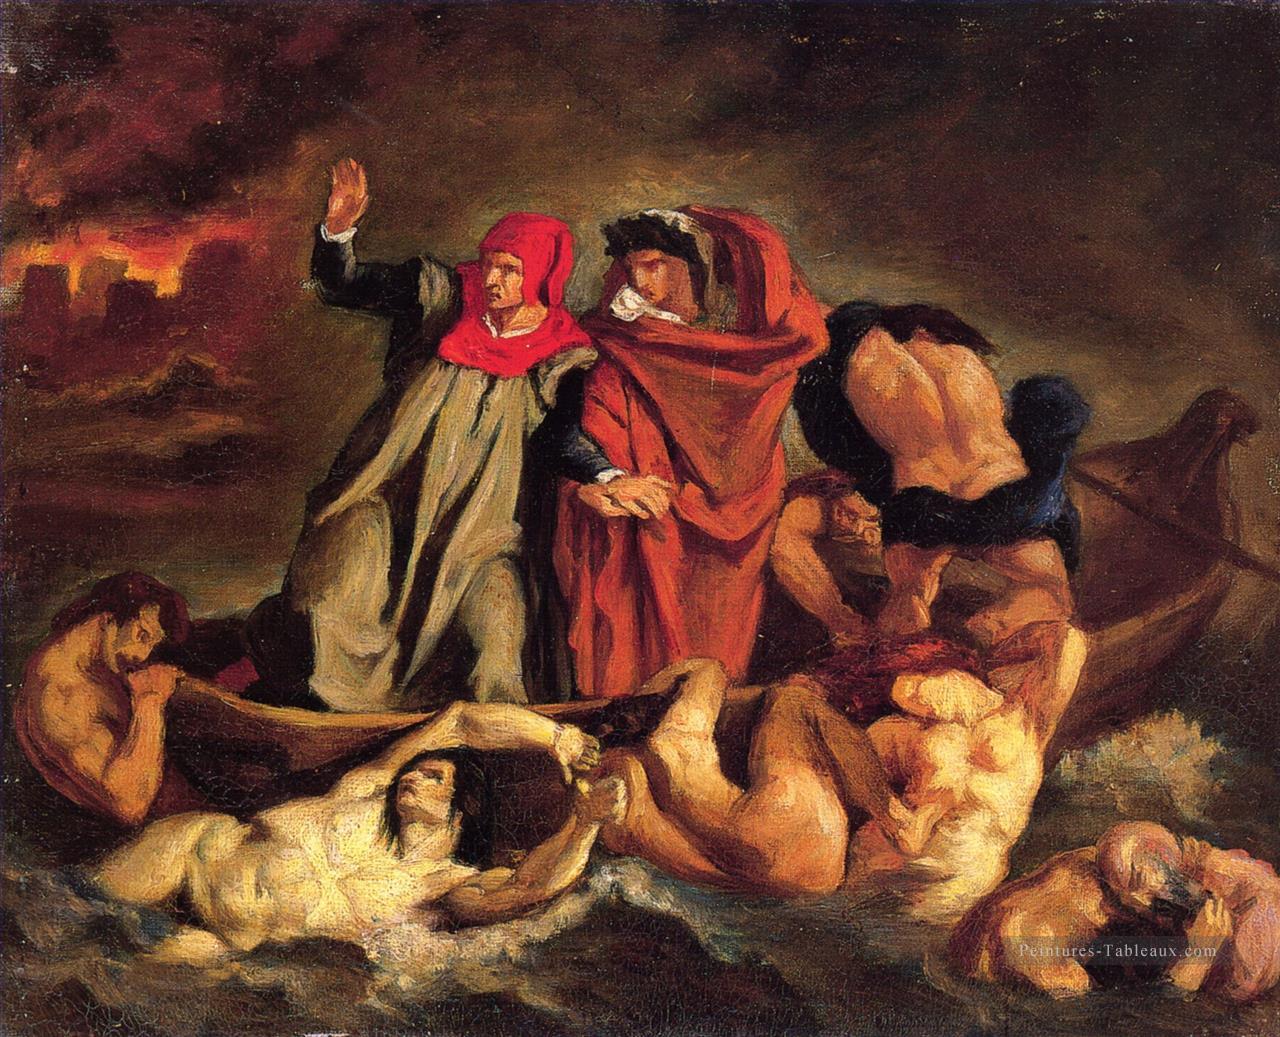 La barque de Dante Copie d’après Delacroix Édouard Manet Peintures à l'huile